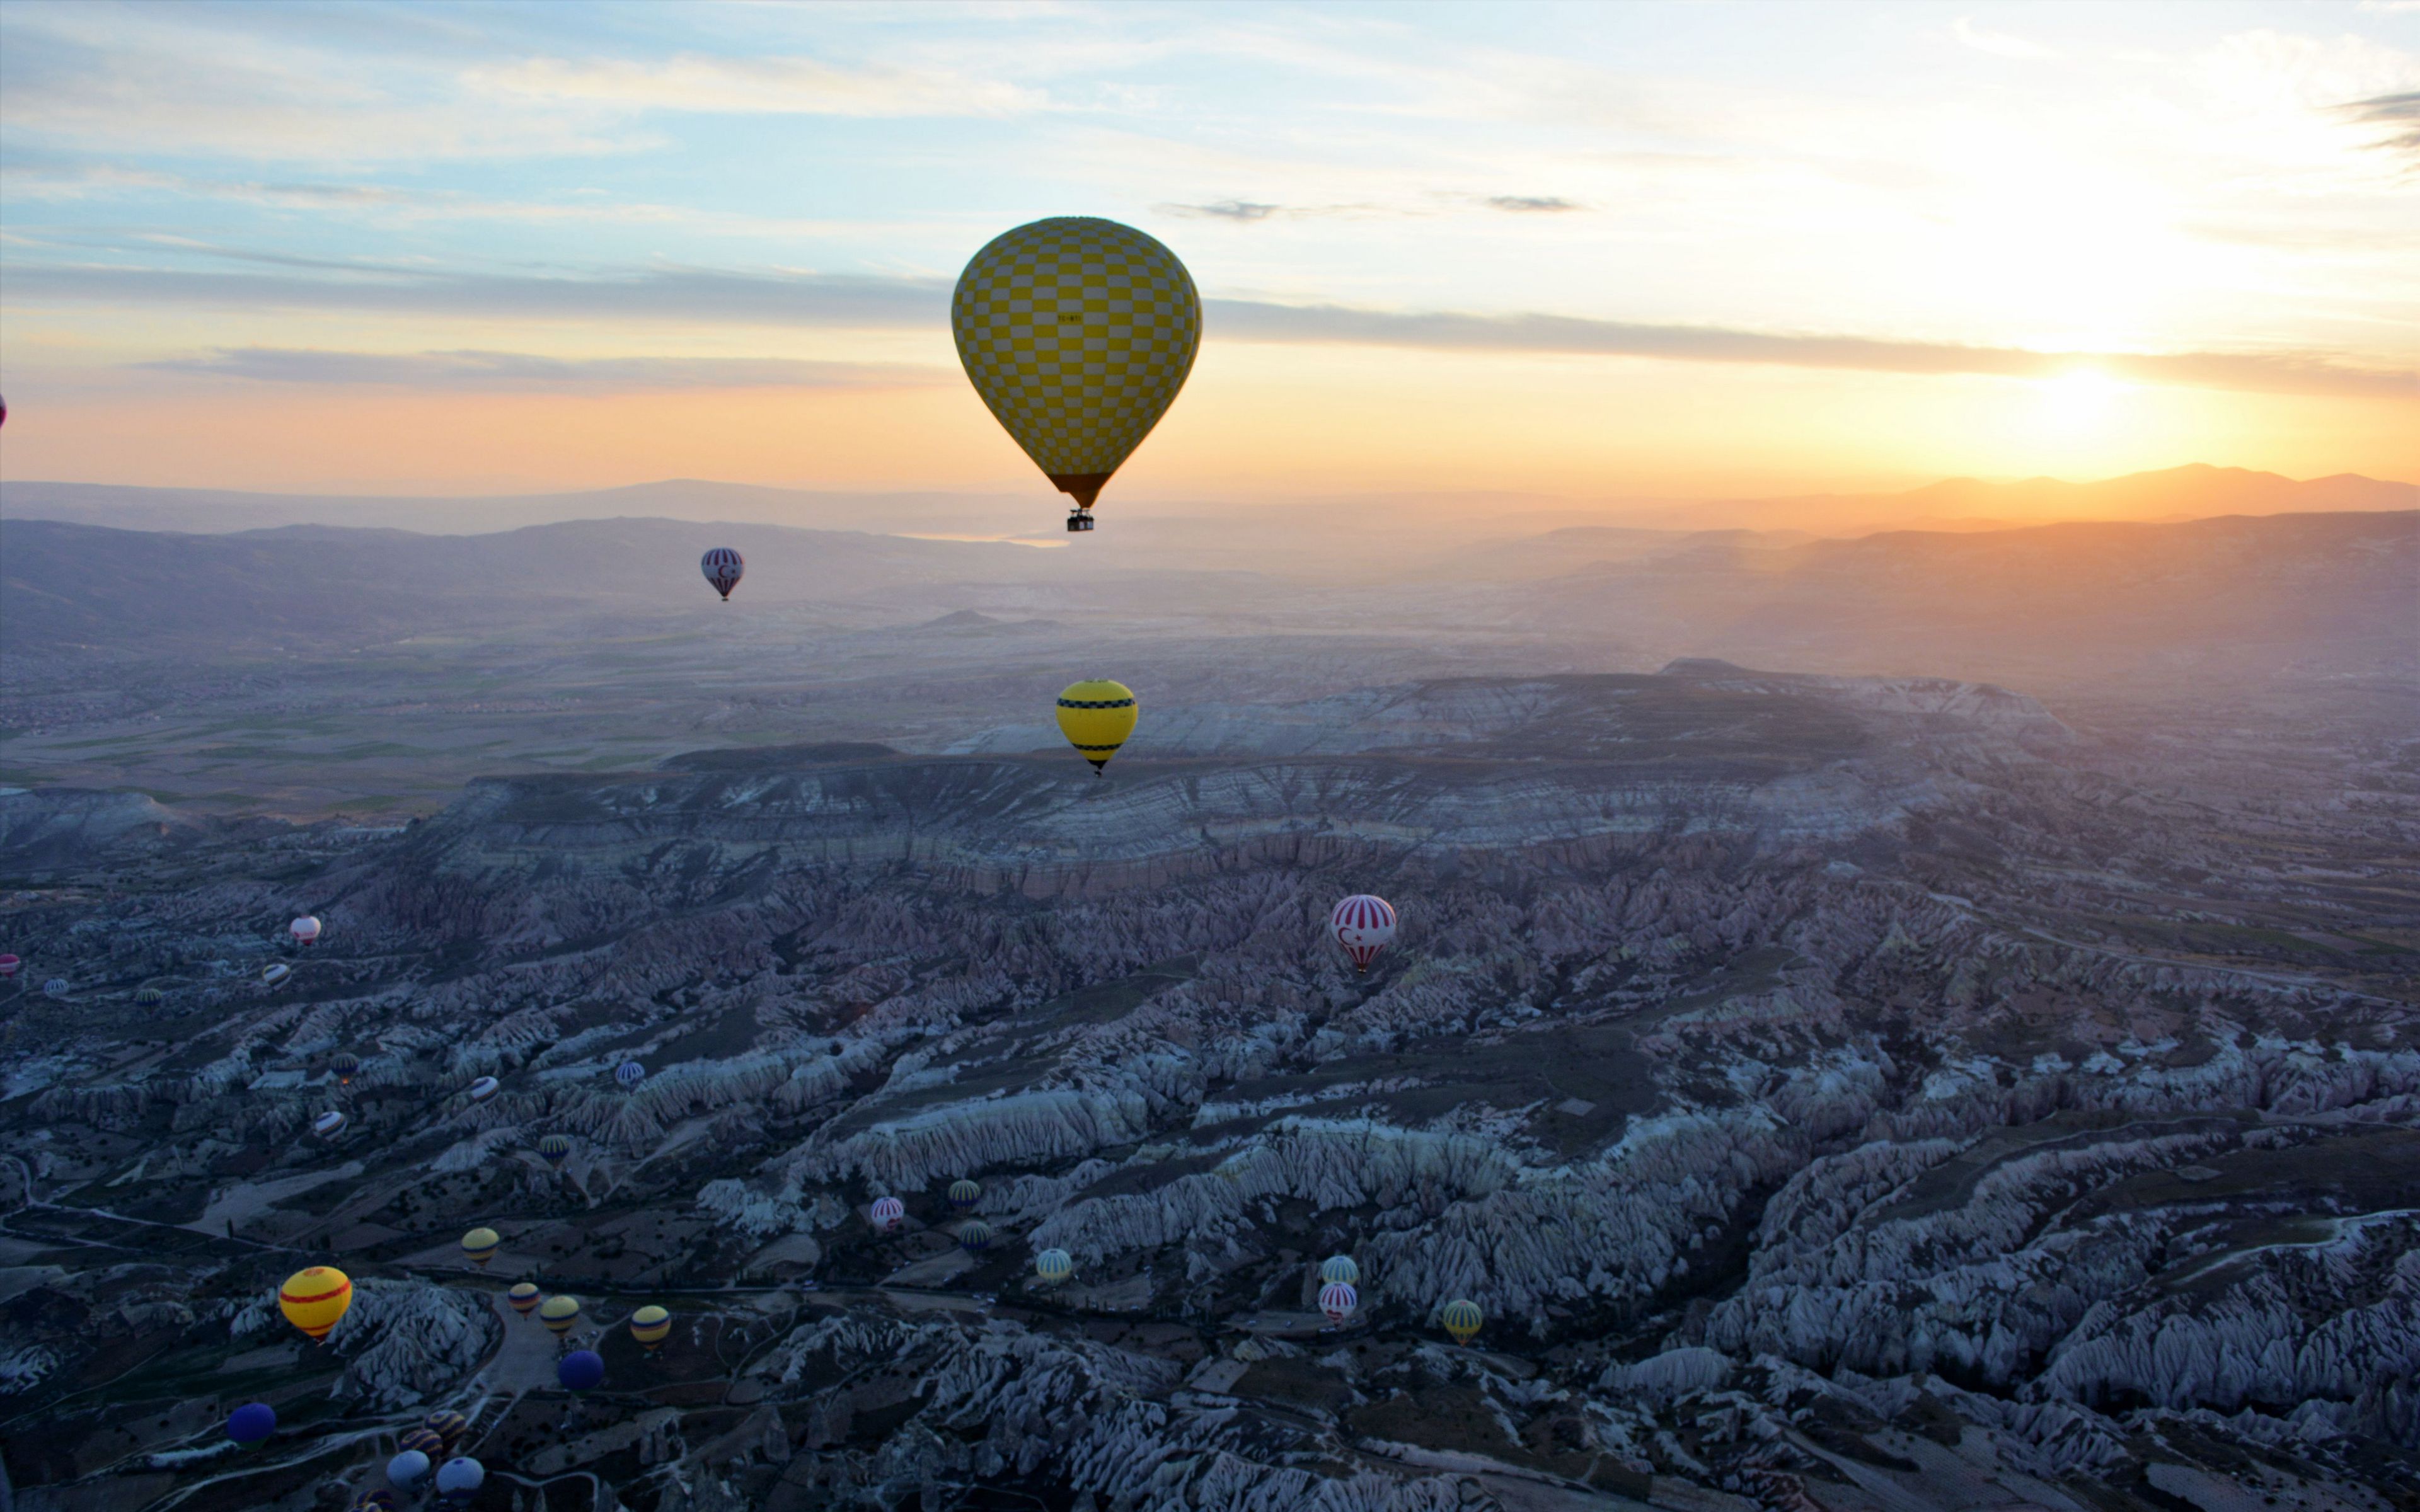 Fondos de pantalla Hot air balloons at sunset